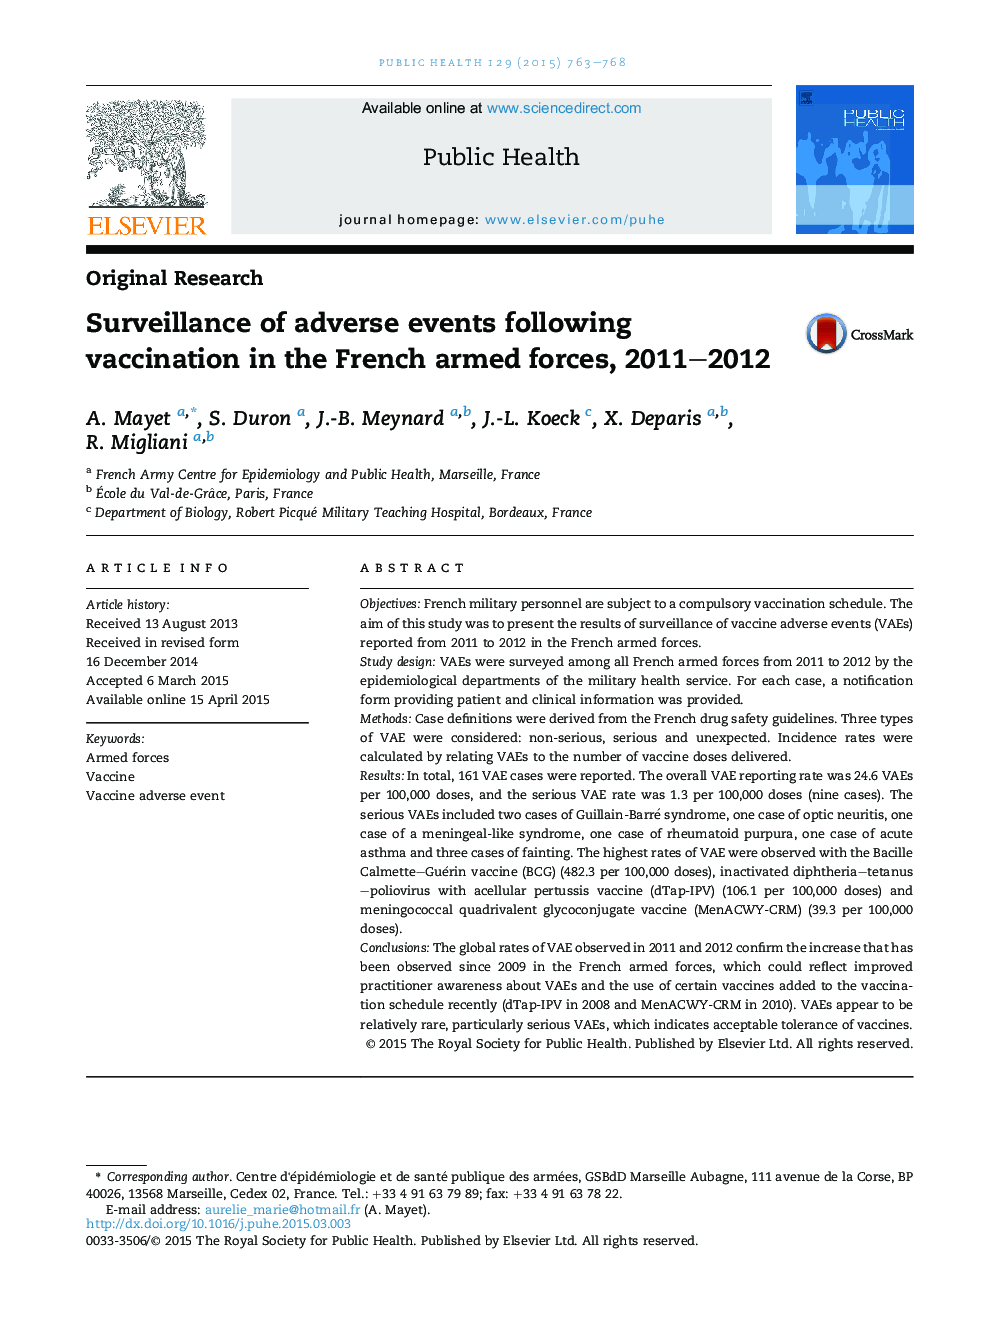 نظارت بر وقوع حوادث پس از واکسیناسیون در نیروهای مسلح فرانسه، 2011-2012